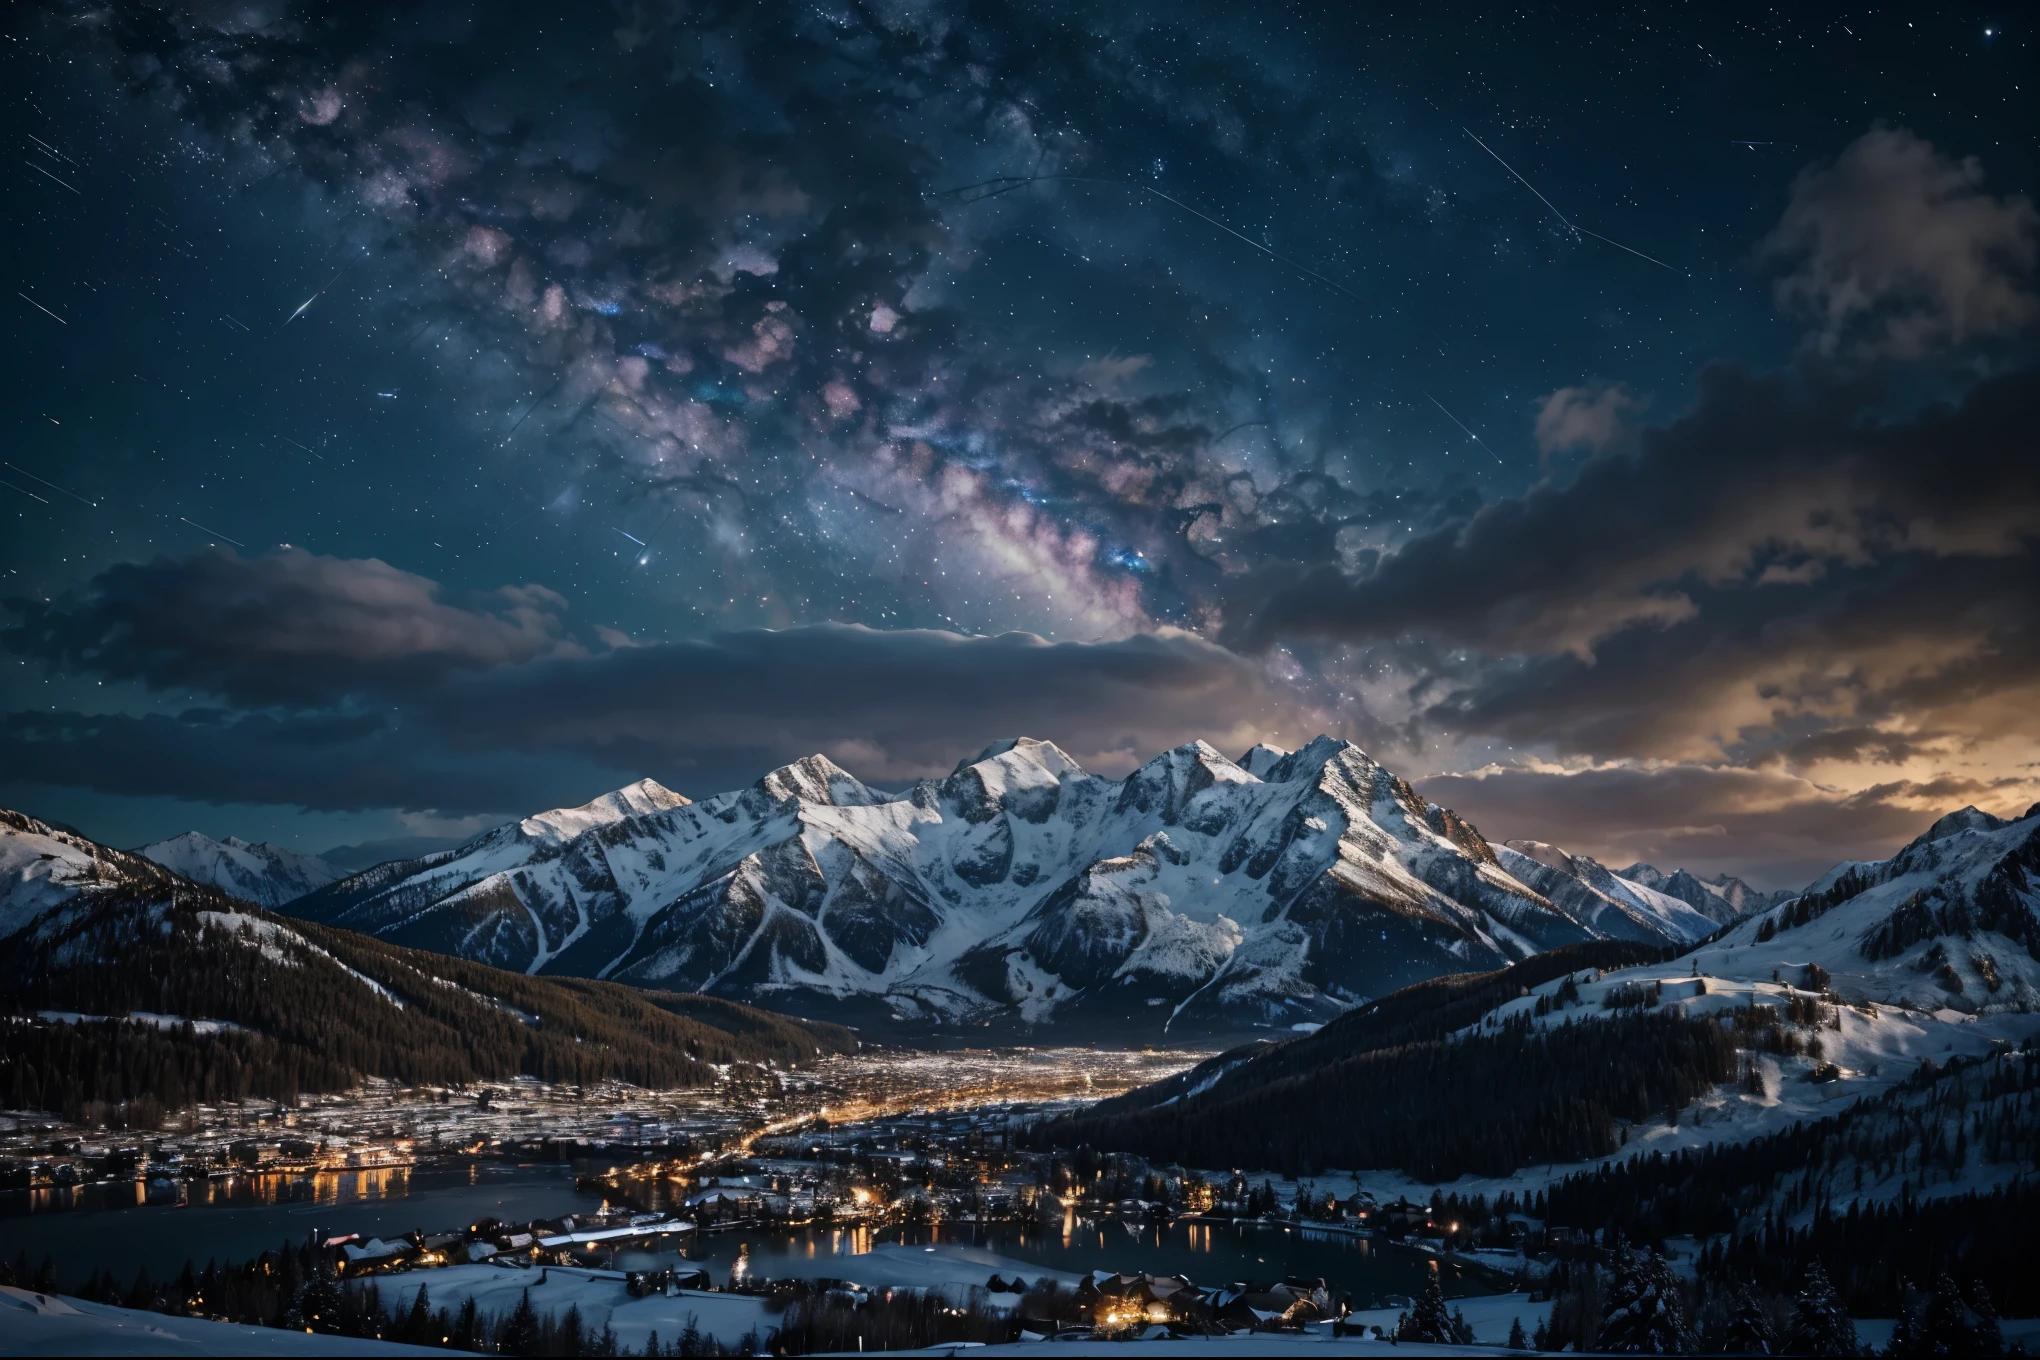 배경, 높은 산이 많다, 구름이 많음, 겨울 하늘, 별자리를 보는 것, 은하, 은하수, 작은 도시 벽지가 있는 아름다운 겨울 밤, 아름다운 호수, 높은 세부 사항, 사실적인 8k 풀 HD.
